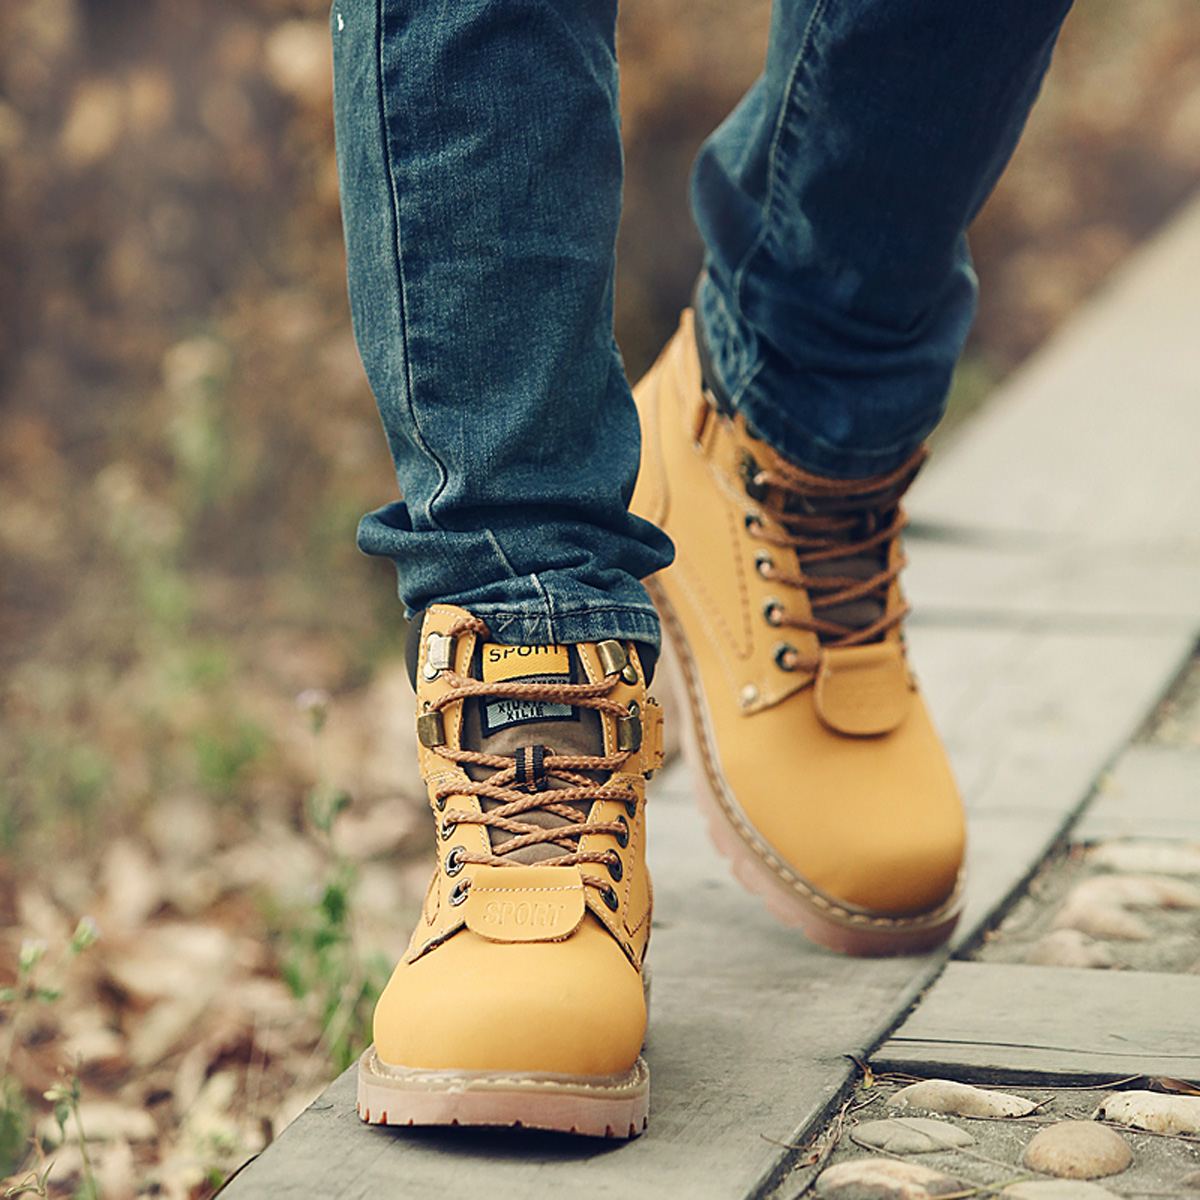 Мужские ботинки: какие выбрать, с чем носить, как ухаживать